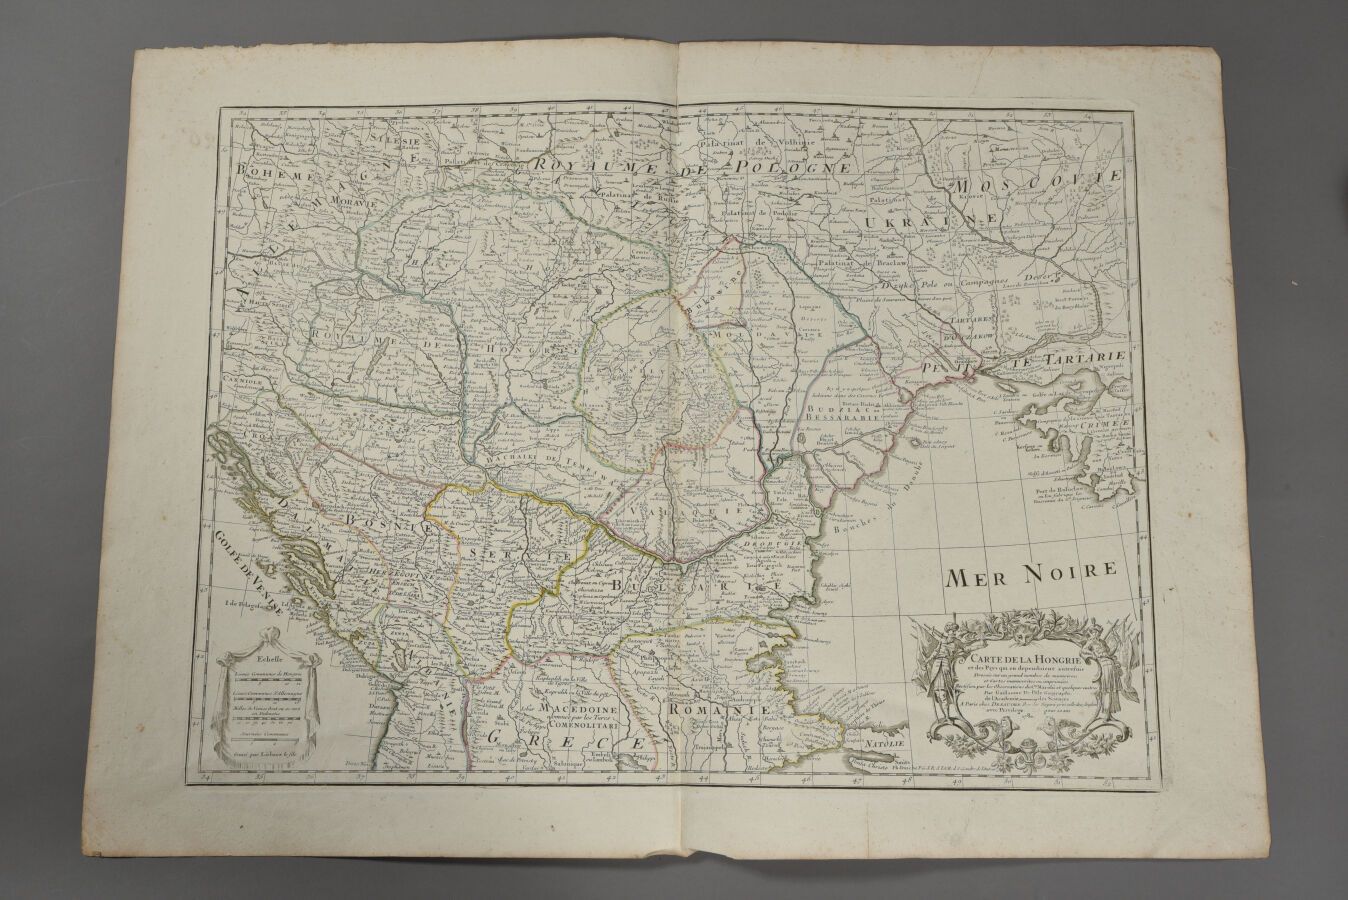 Null 纪尧姆-德利斯勒和他的继承人德佐赫
(法国，18世纪)
匈牙利地图。1780年。
双对开。 
有些缺陷。